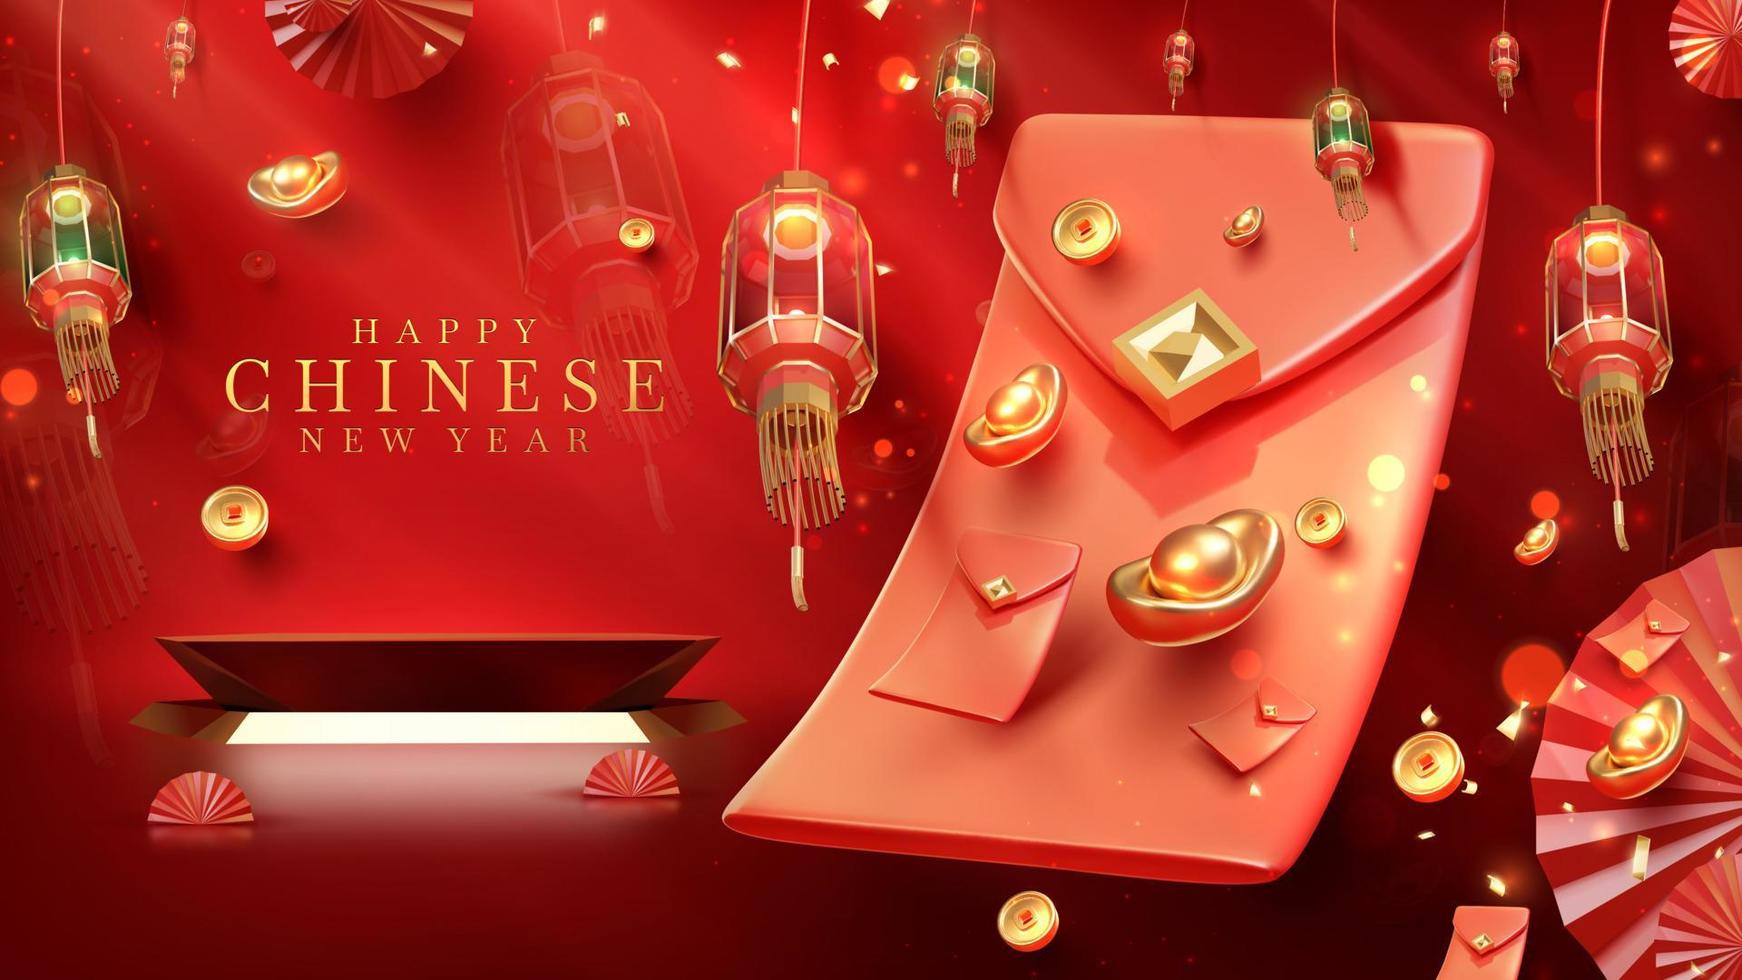 fondo de lujo rojo con elemento de podio de exhibición de producto con adorno de año nuevo chino realista en 3d y decoración de efecto de luz brillante y bokeh. ilustración vectorial vector